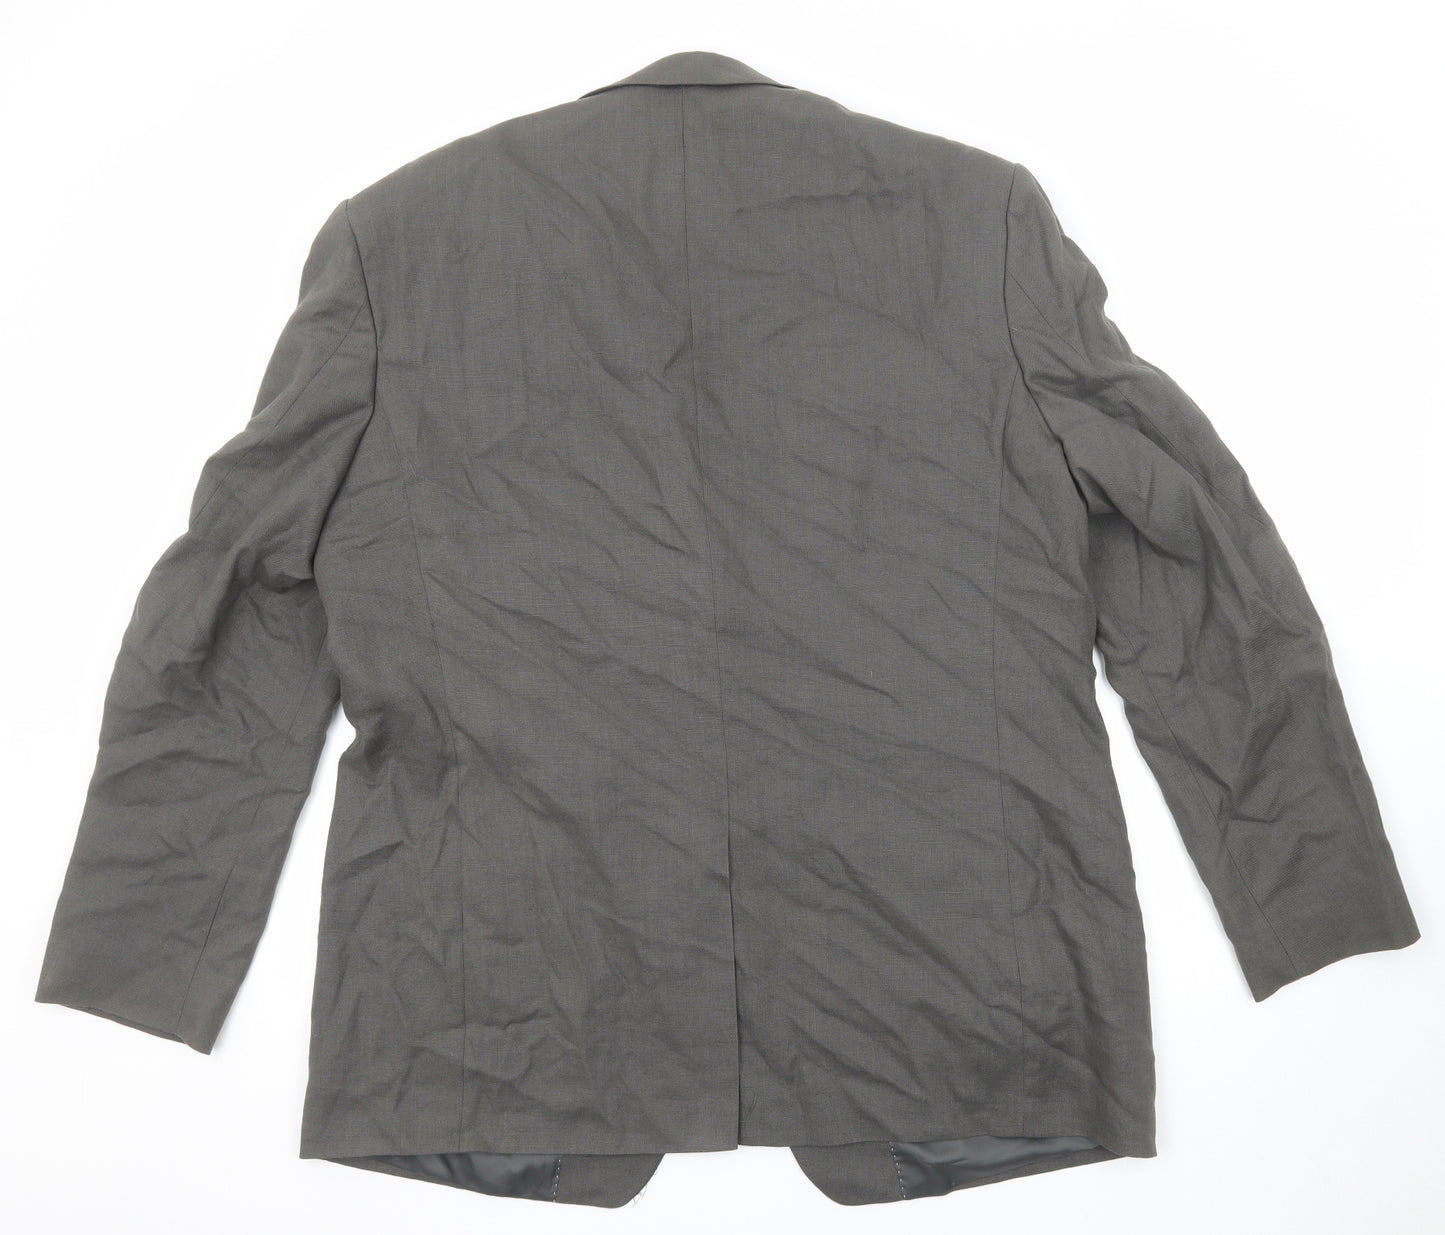 Marks and Spencer Mens Grey Linen Jacket Suit Jacket Size 46 Regular